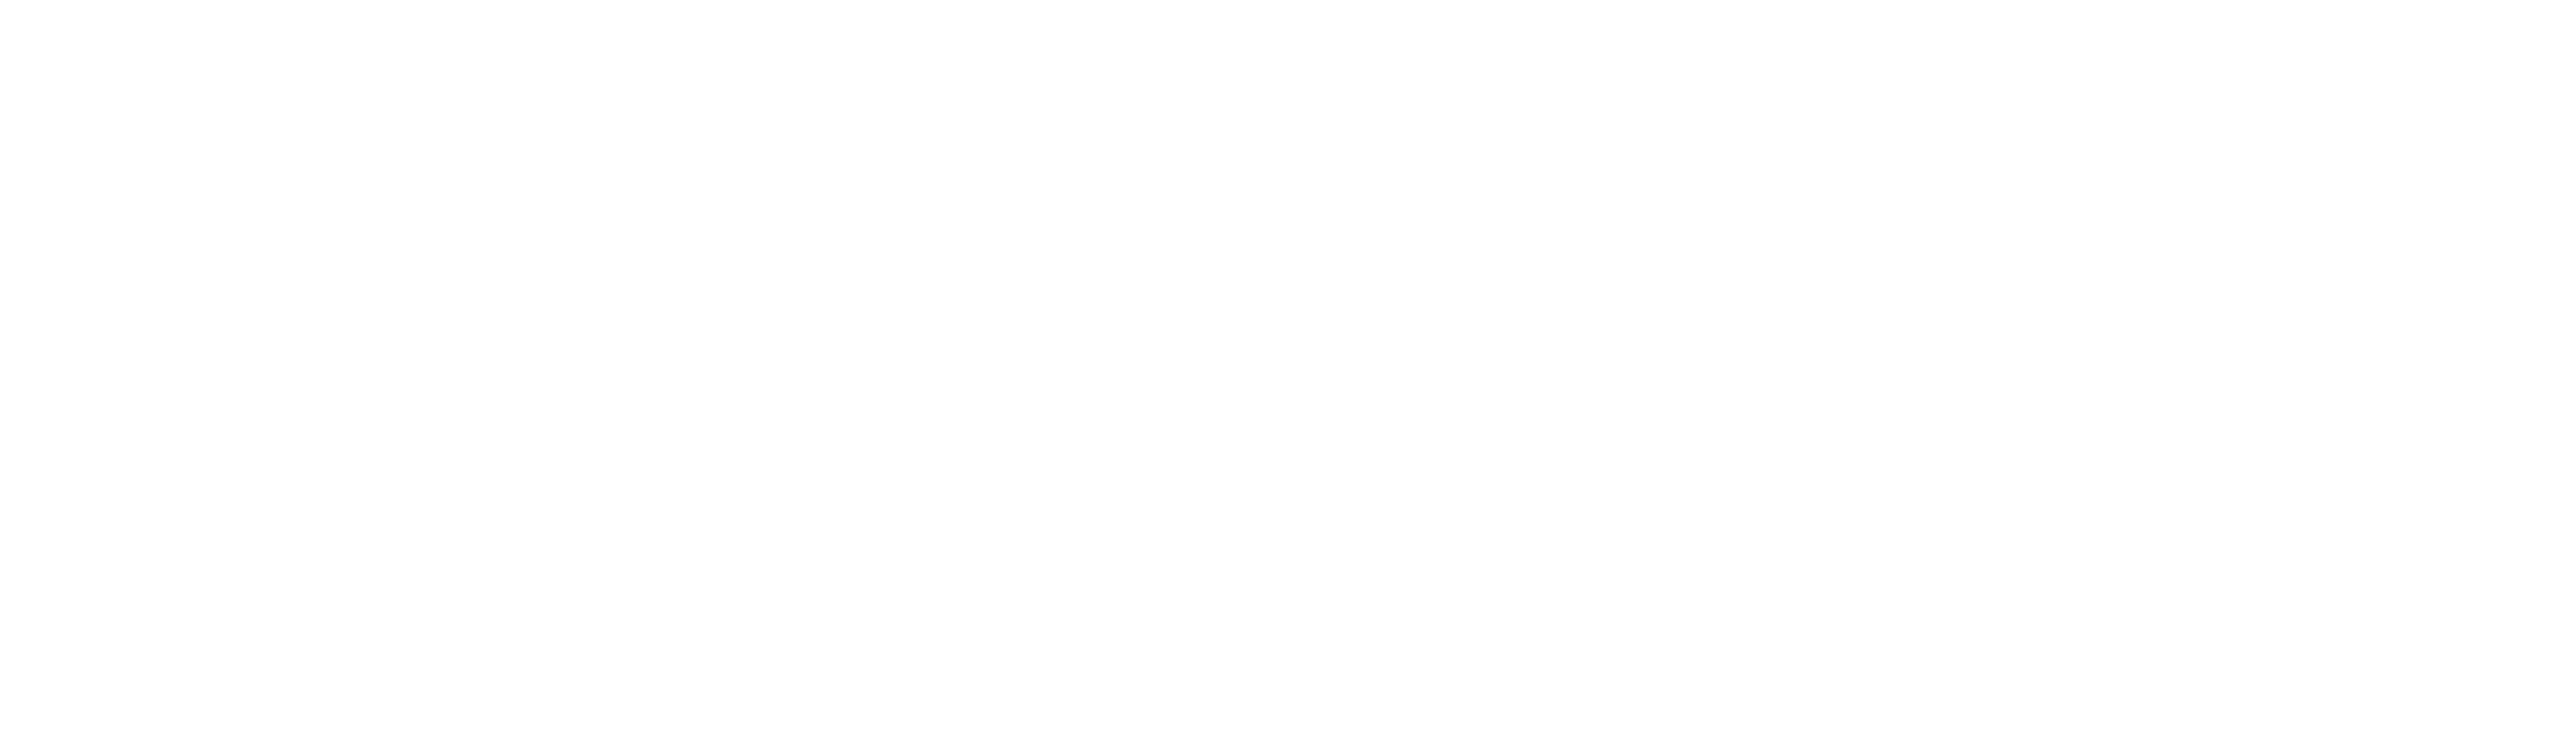 EUROTECH AMERICAL LOGO FIN1C TRANS - versadac™ Scalable Data Recorder